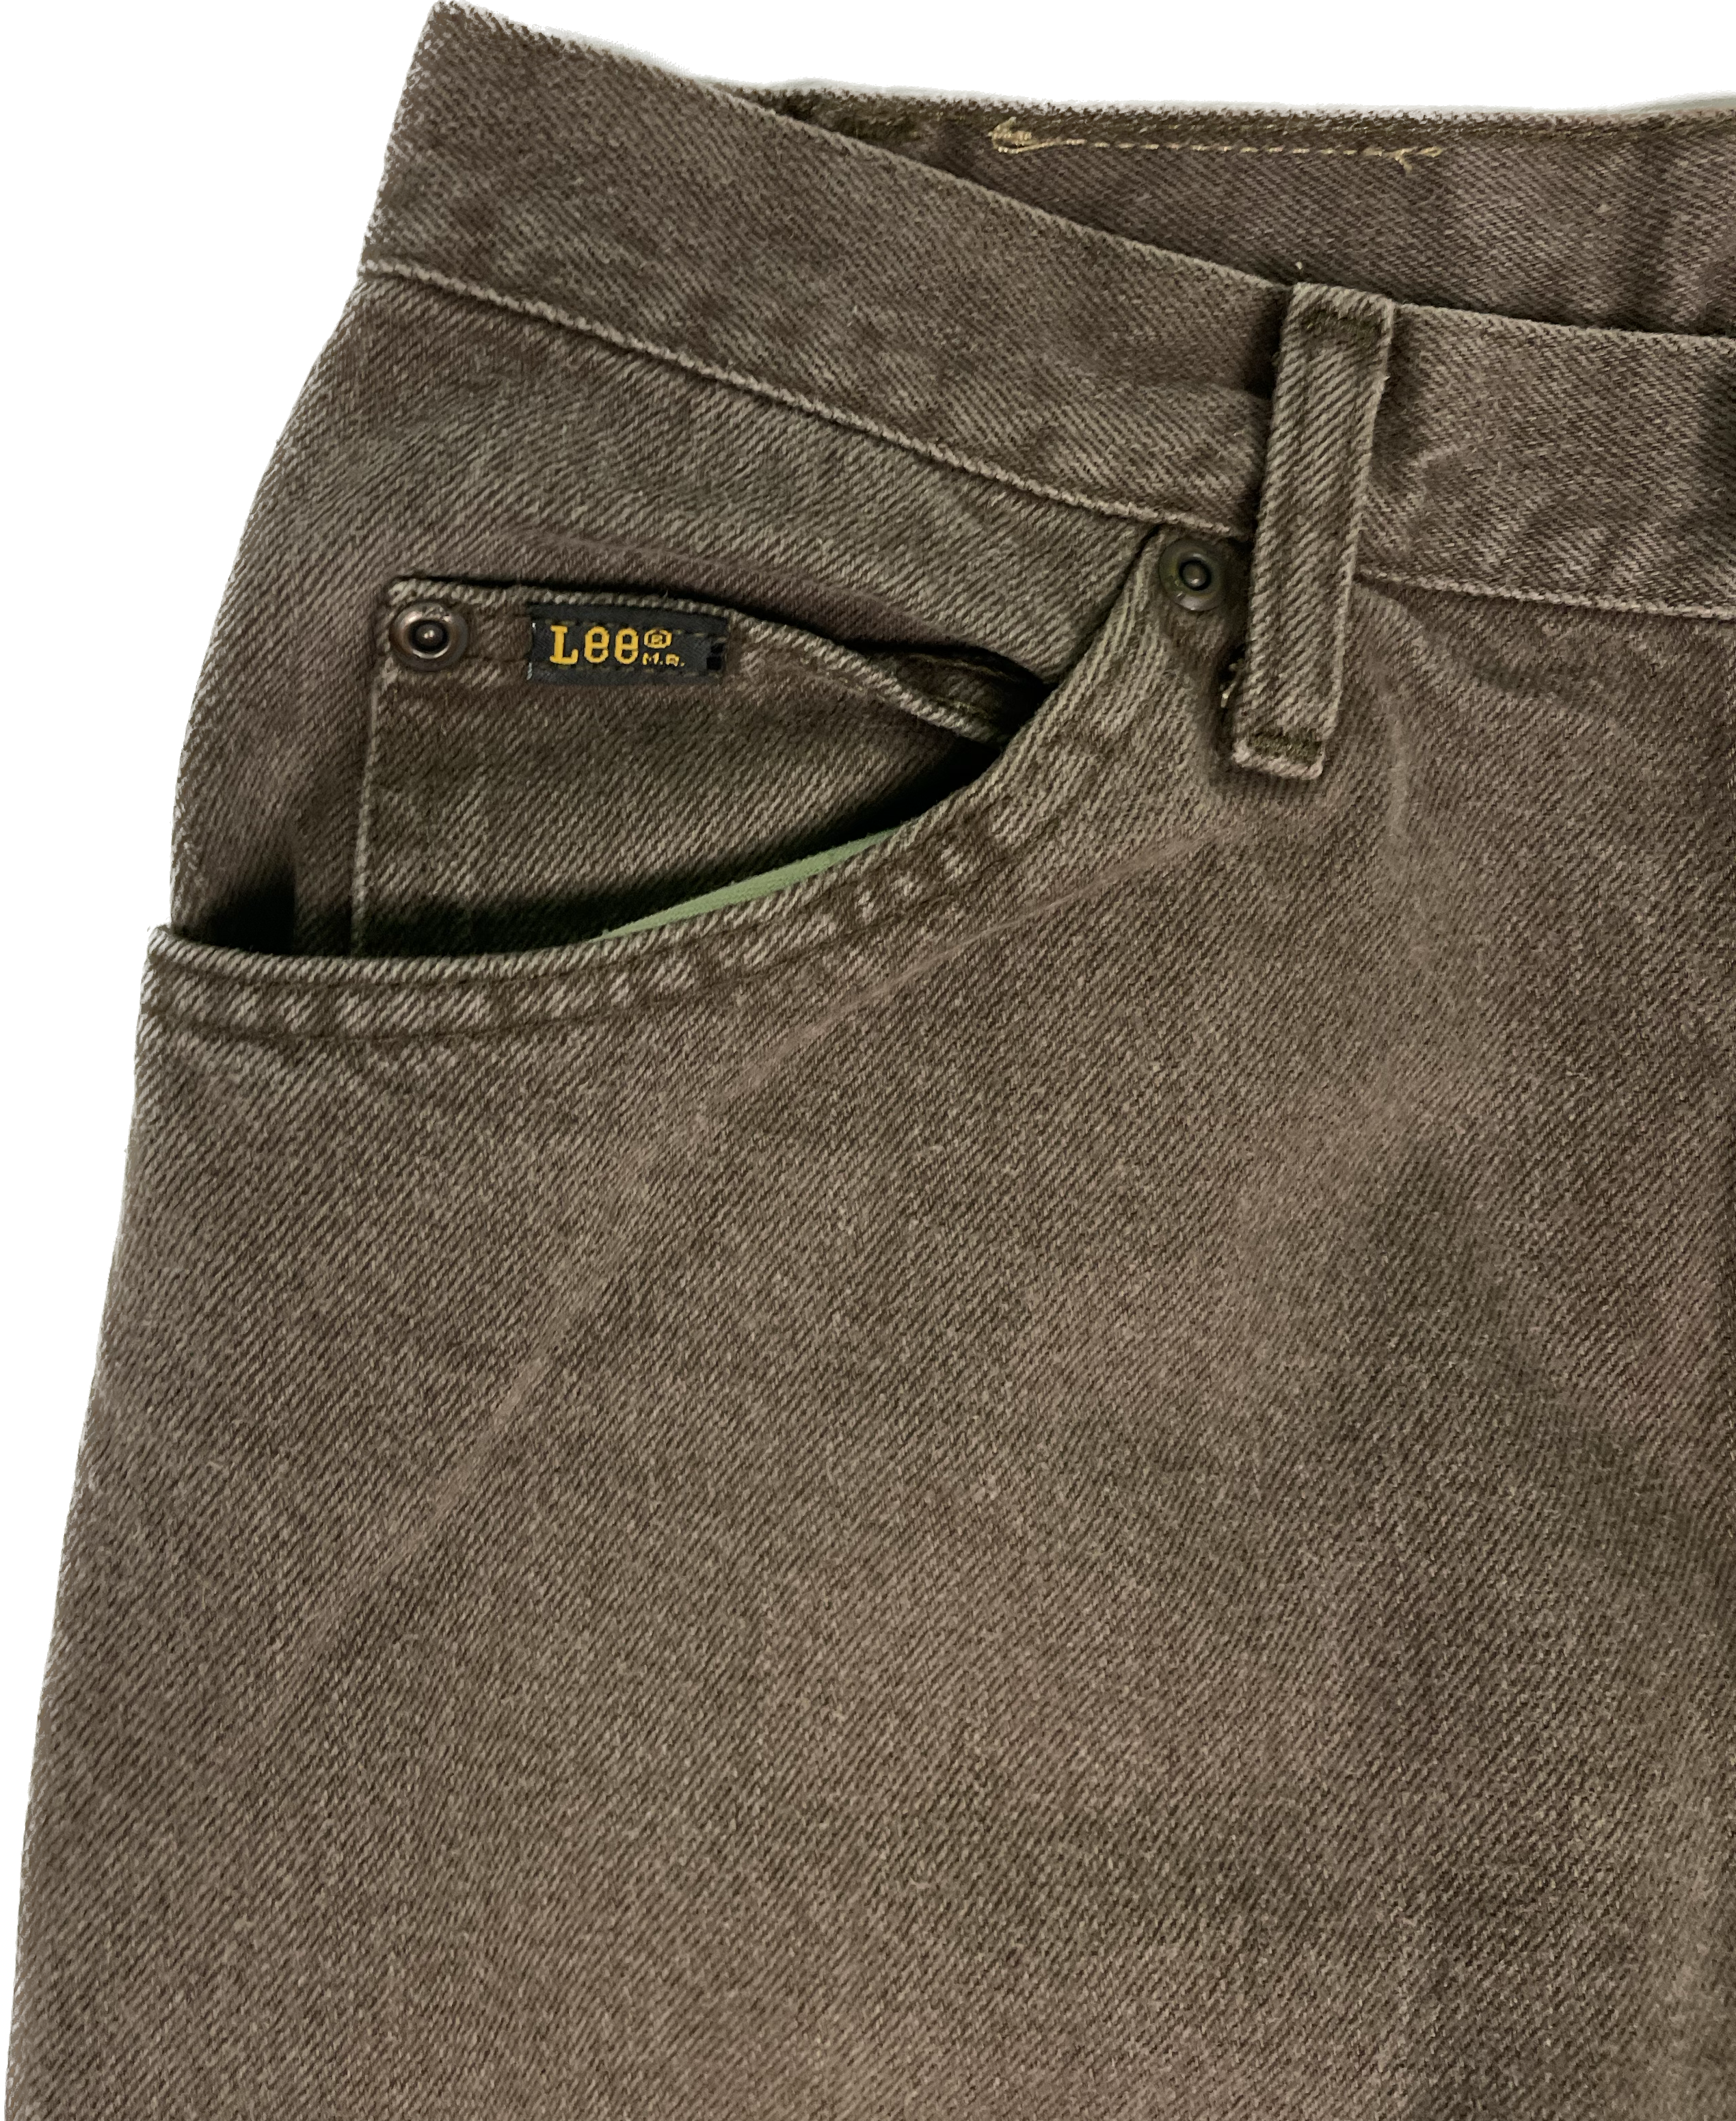 lee jeans logo png